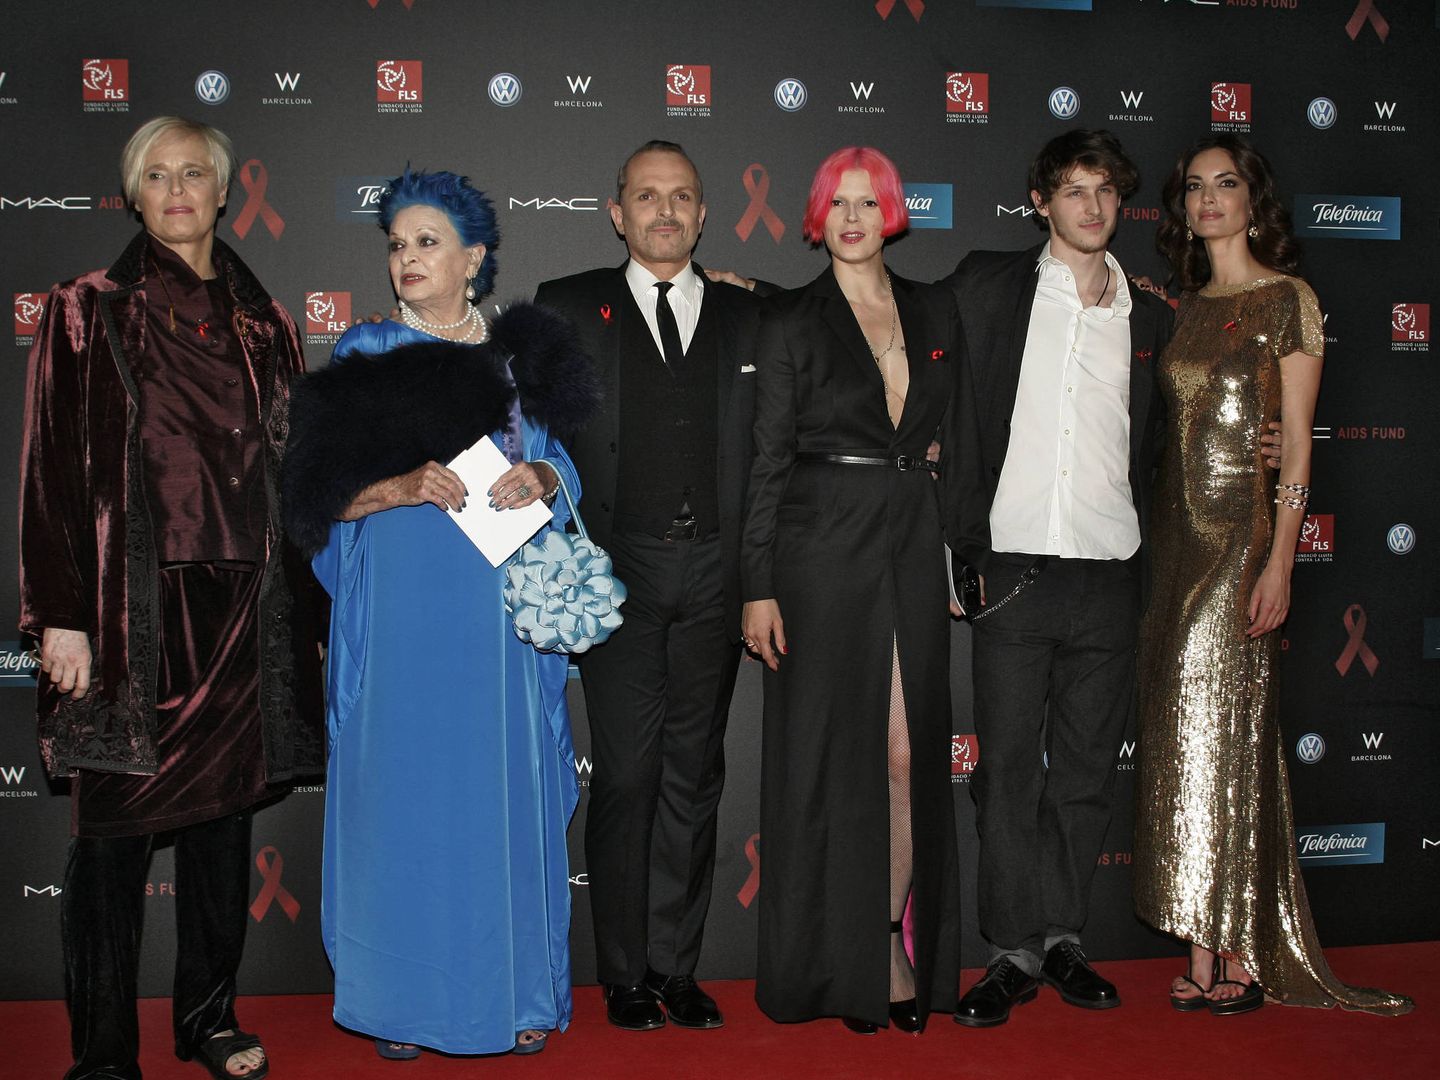 Parte de la familia Bosé, en 2011, en la gala contra el sida que organizó Miguel Bosé durante años. (EFE)